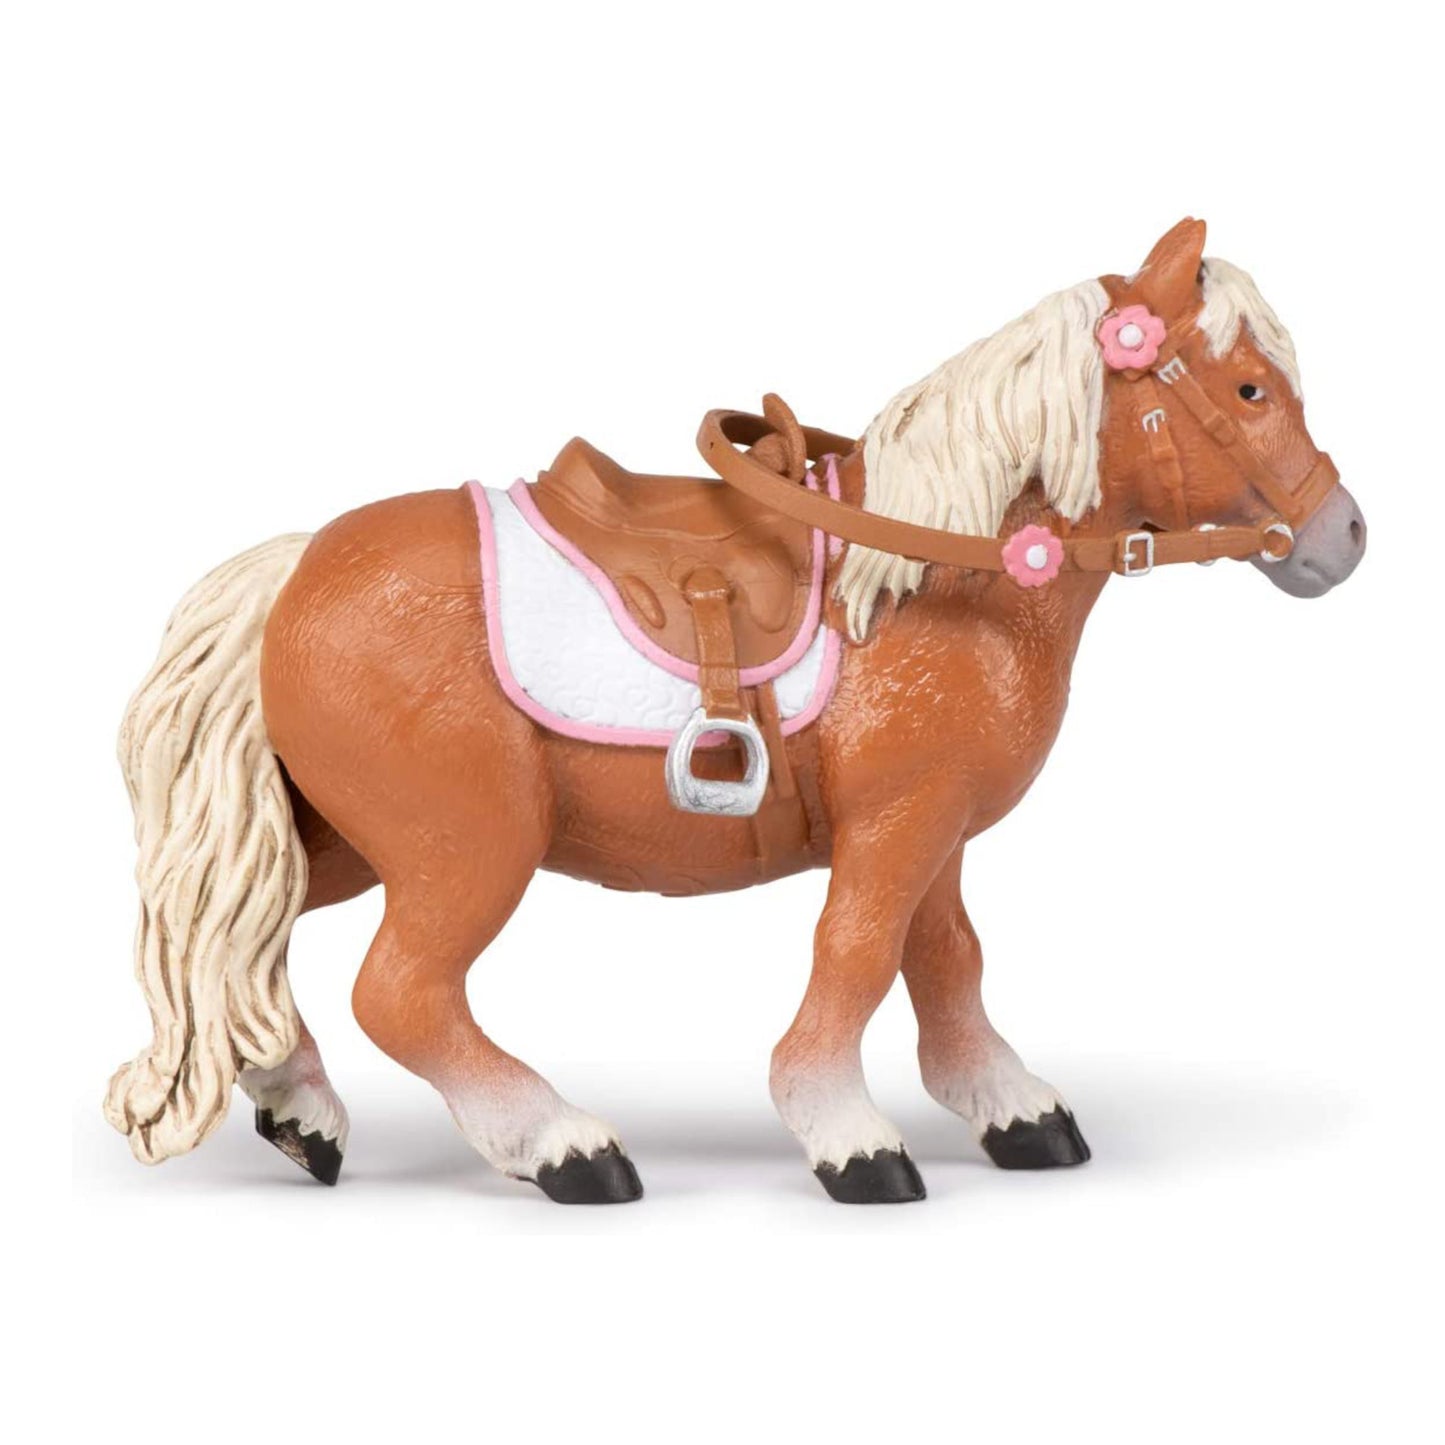 Shetland Pony with Saddle